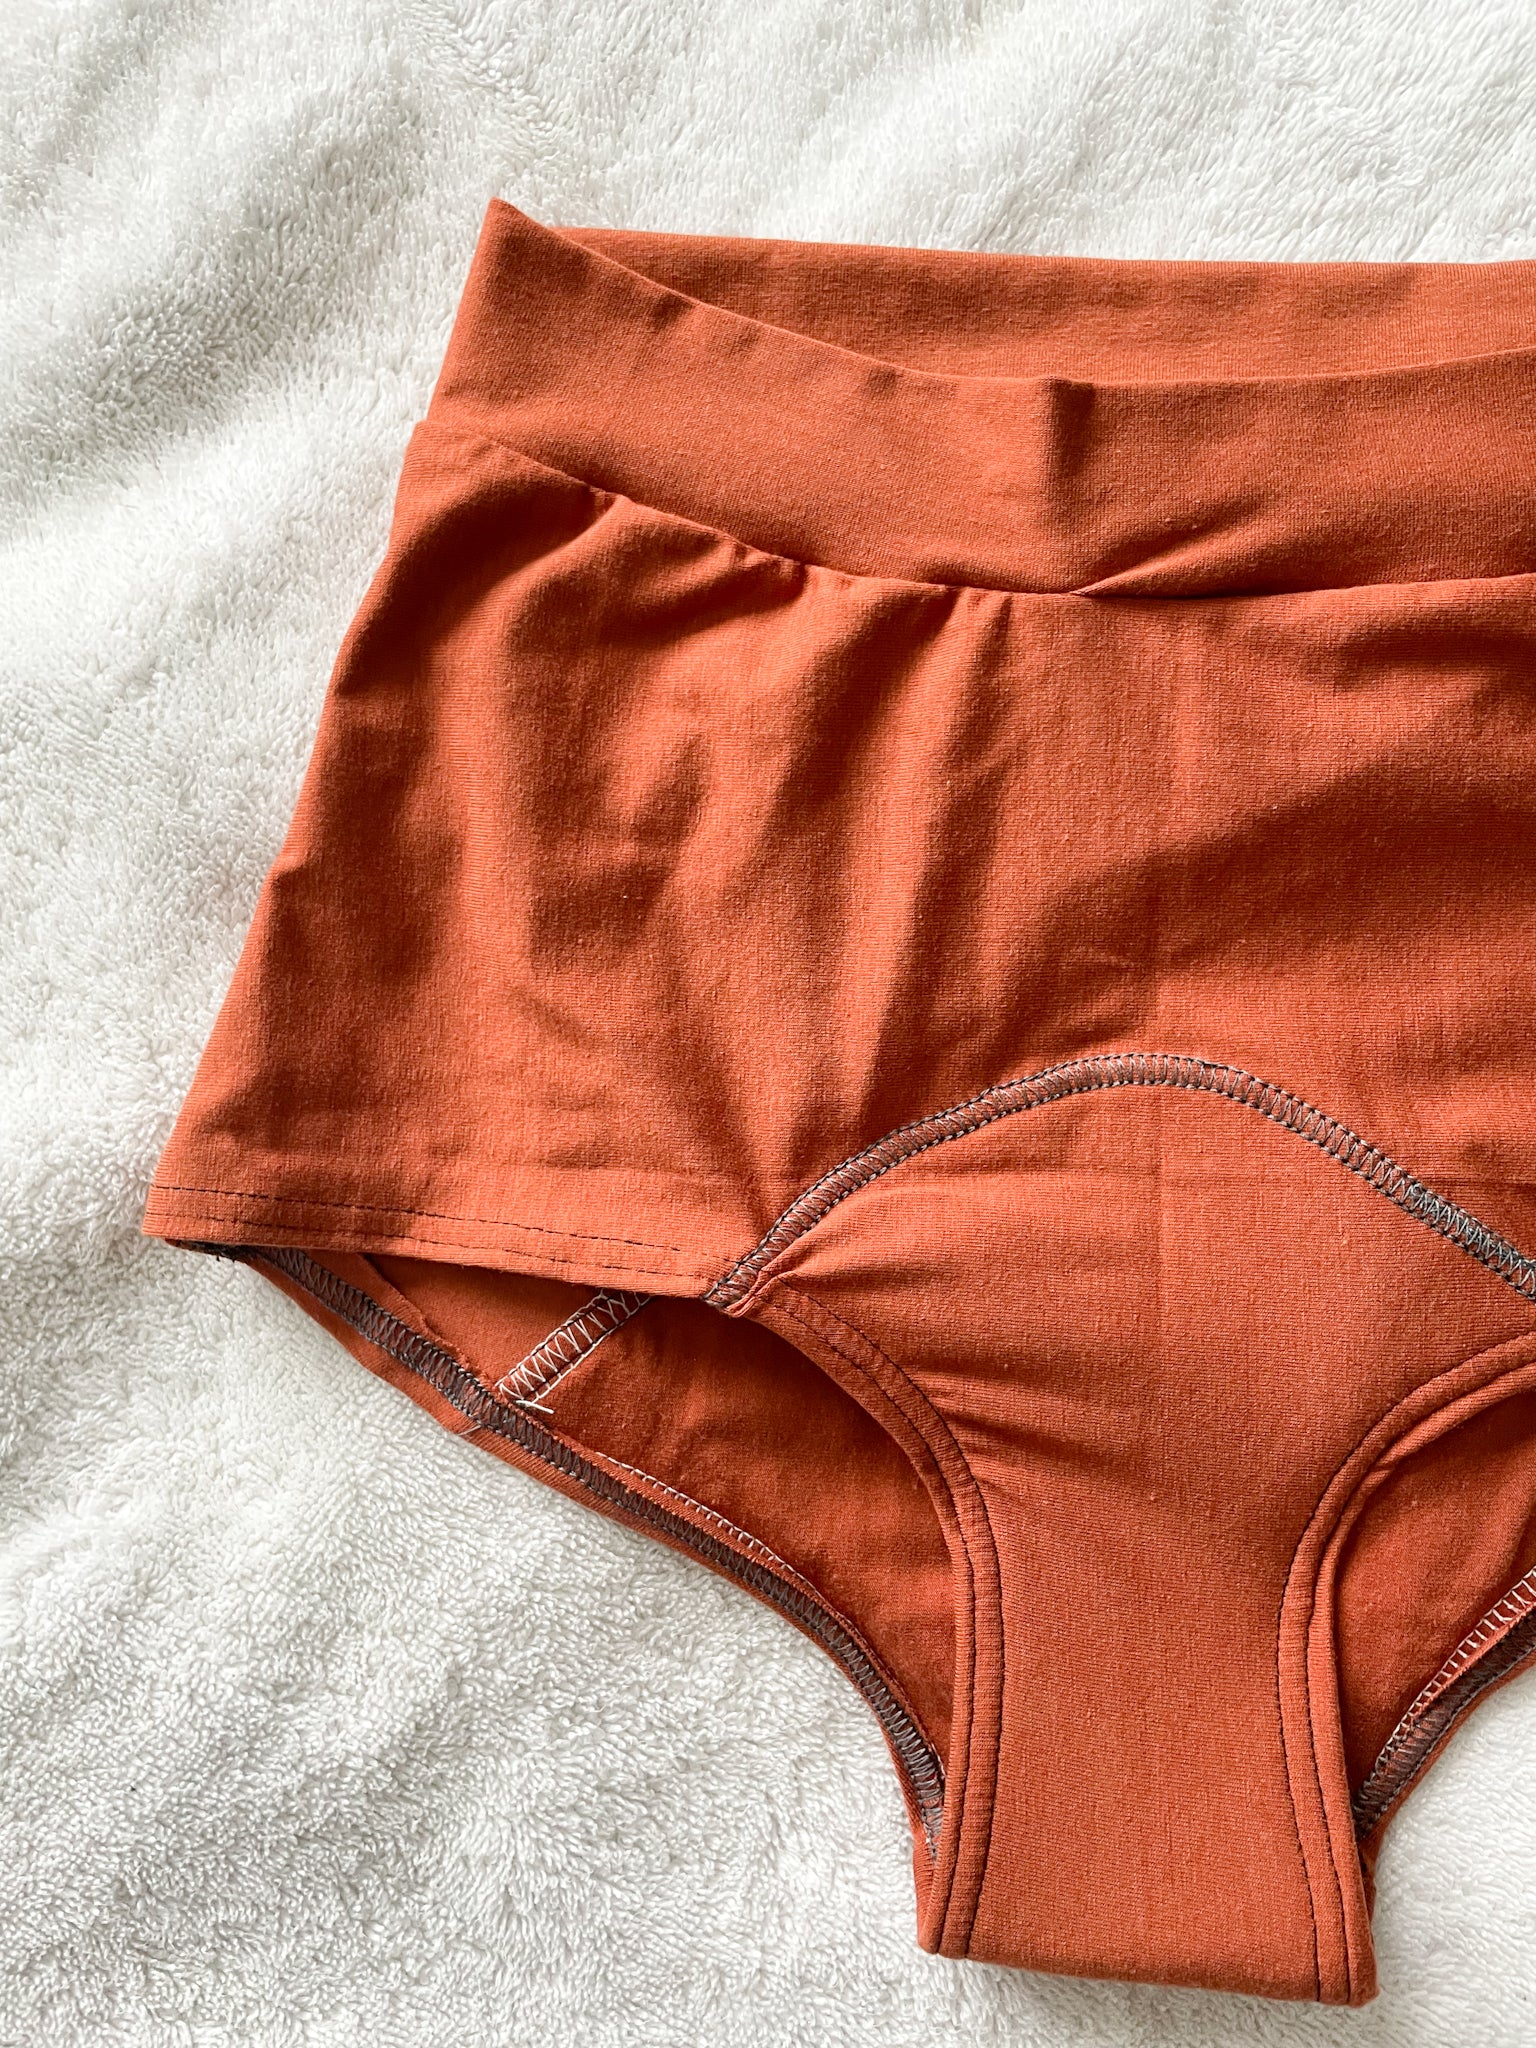 twifer panties for women high waist leakproof underwear for women plus size  panties leak proof menstrual panties pants